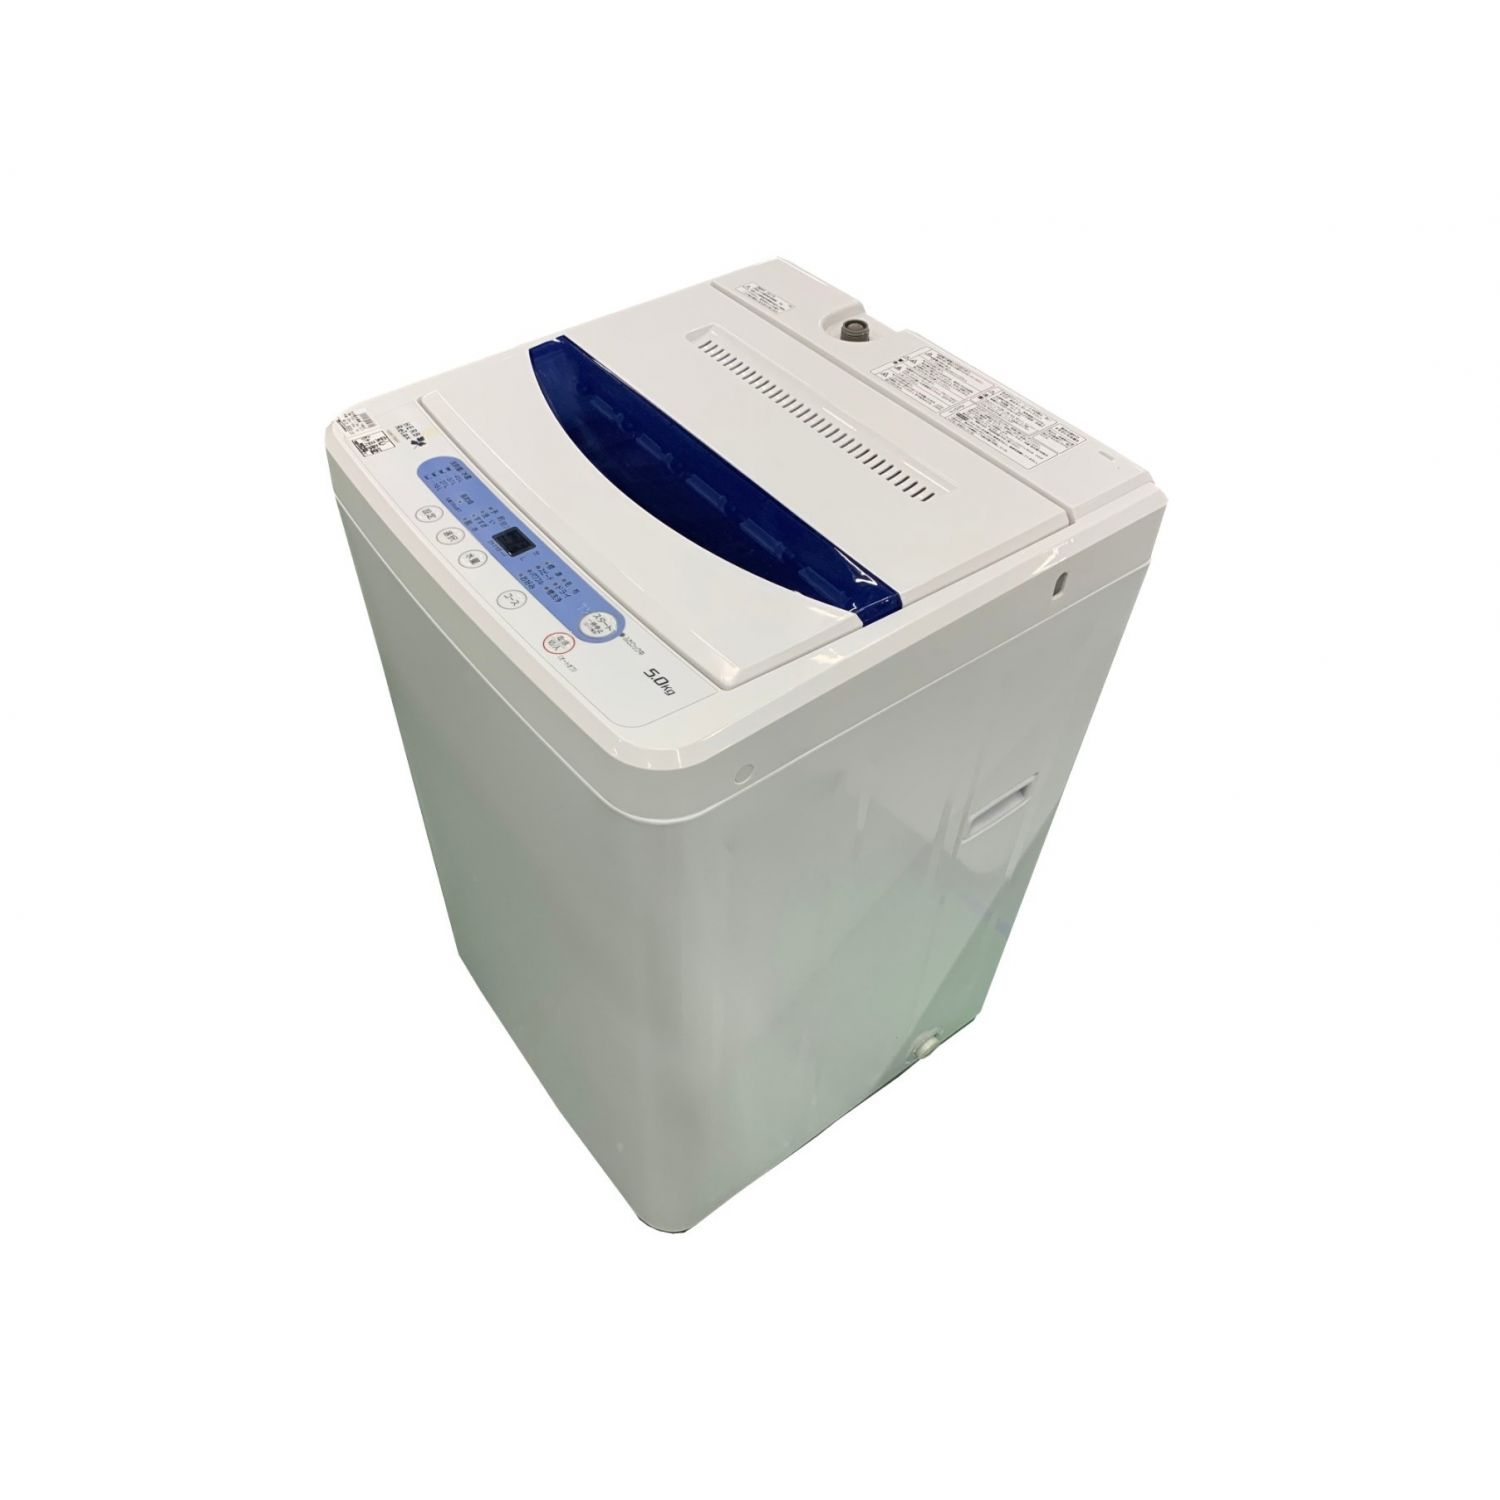 YAMADA (ヤマダ) 2017年製 5.0kg 全自動洗濯機 5.0kg YWM-T50A1 2017年 ...